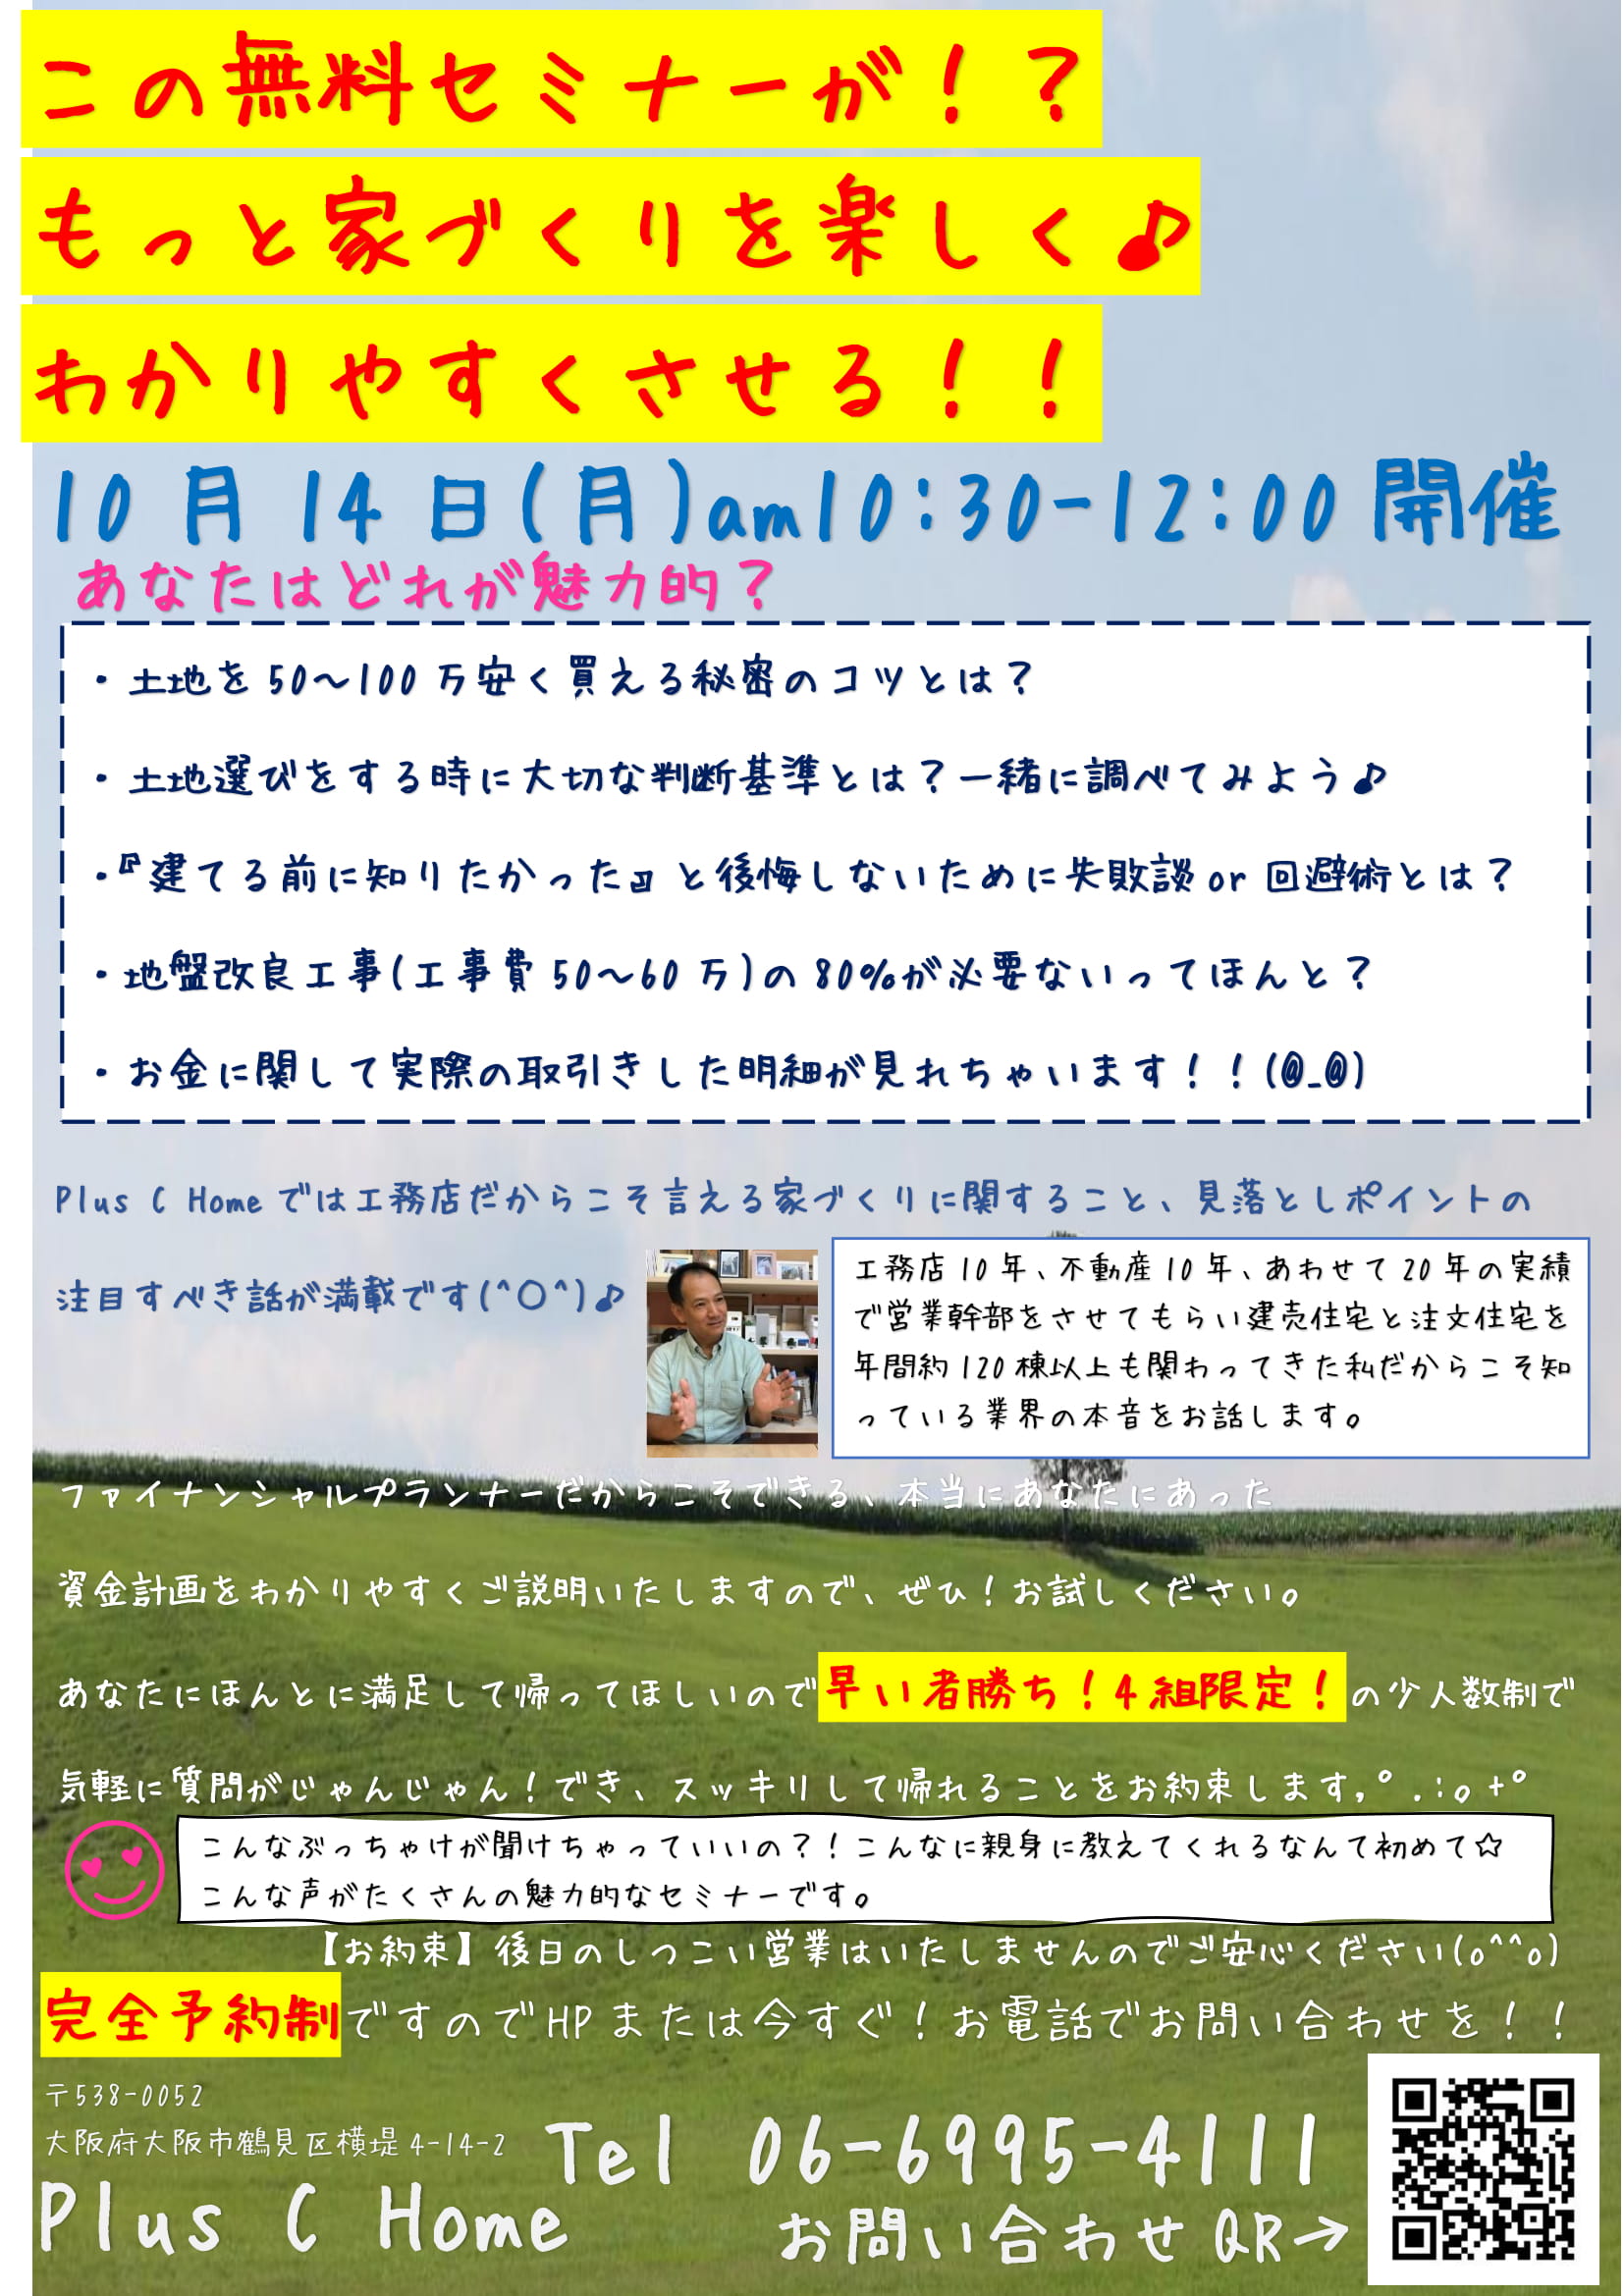 この無料セミナーが！？もっと家づくりを楽しく♪わかりやすくさせる！！大阪注文住宅Plus C Homeの住宅セミナー